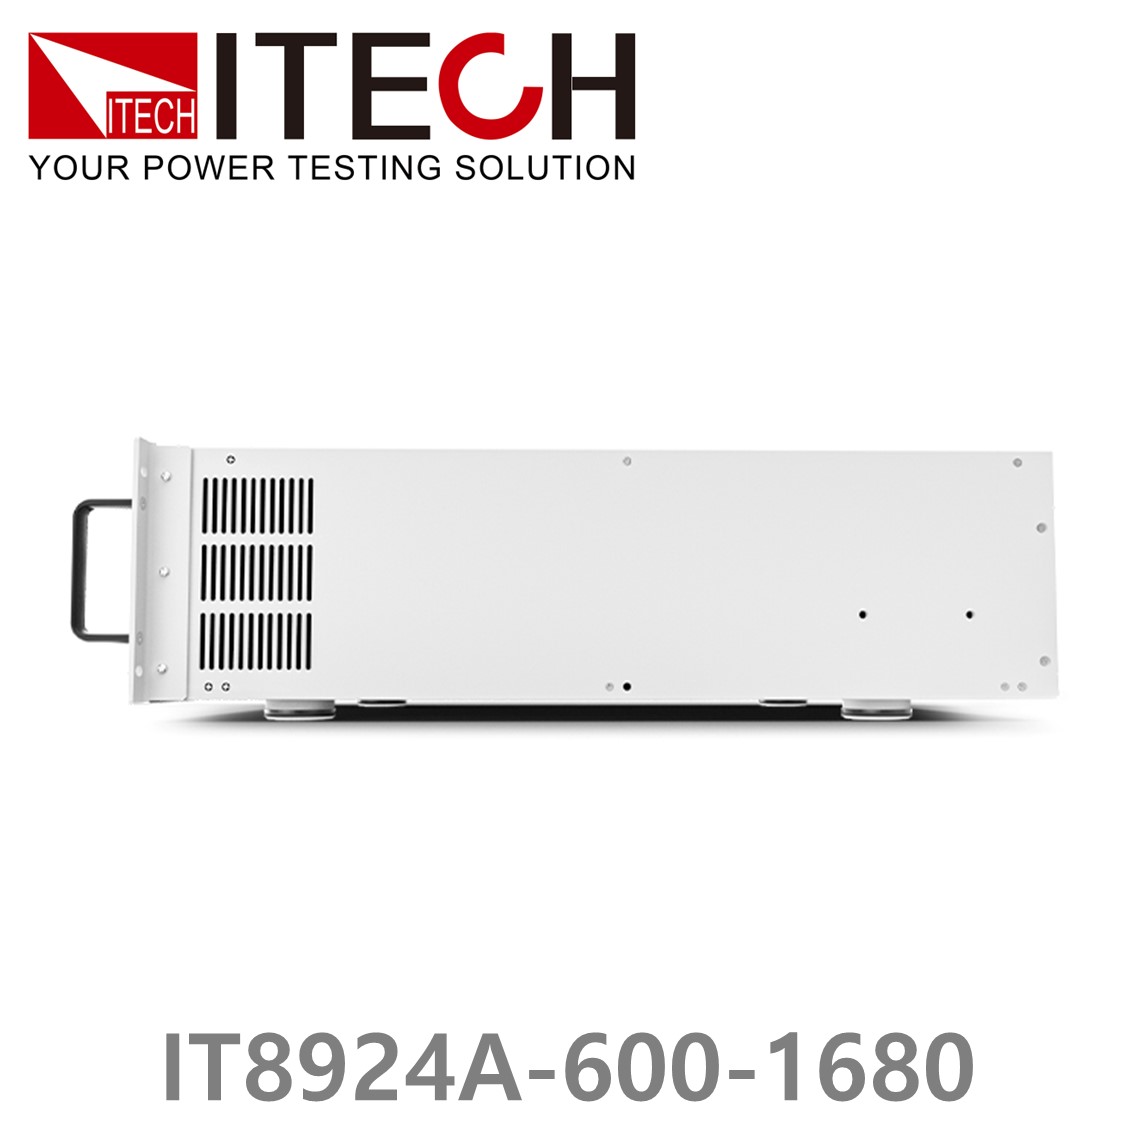 [ ITECH ] IT8924A-600-1680  고성능 고전력 DC 전자로드 600V/1680A/24kW (27U)